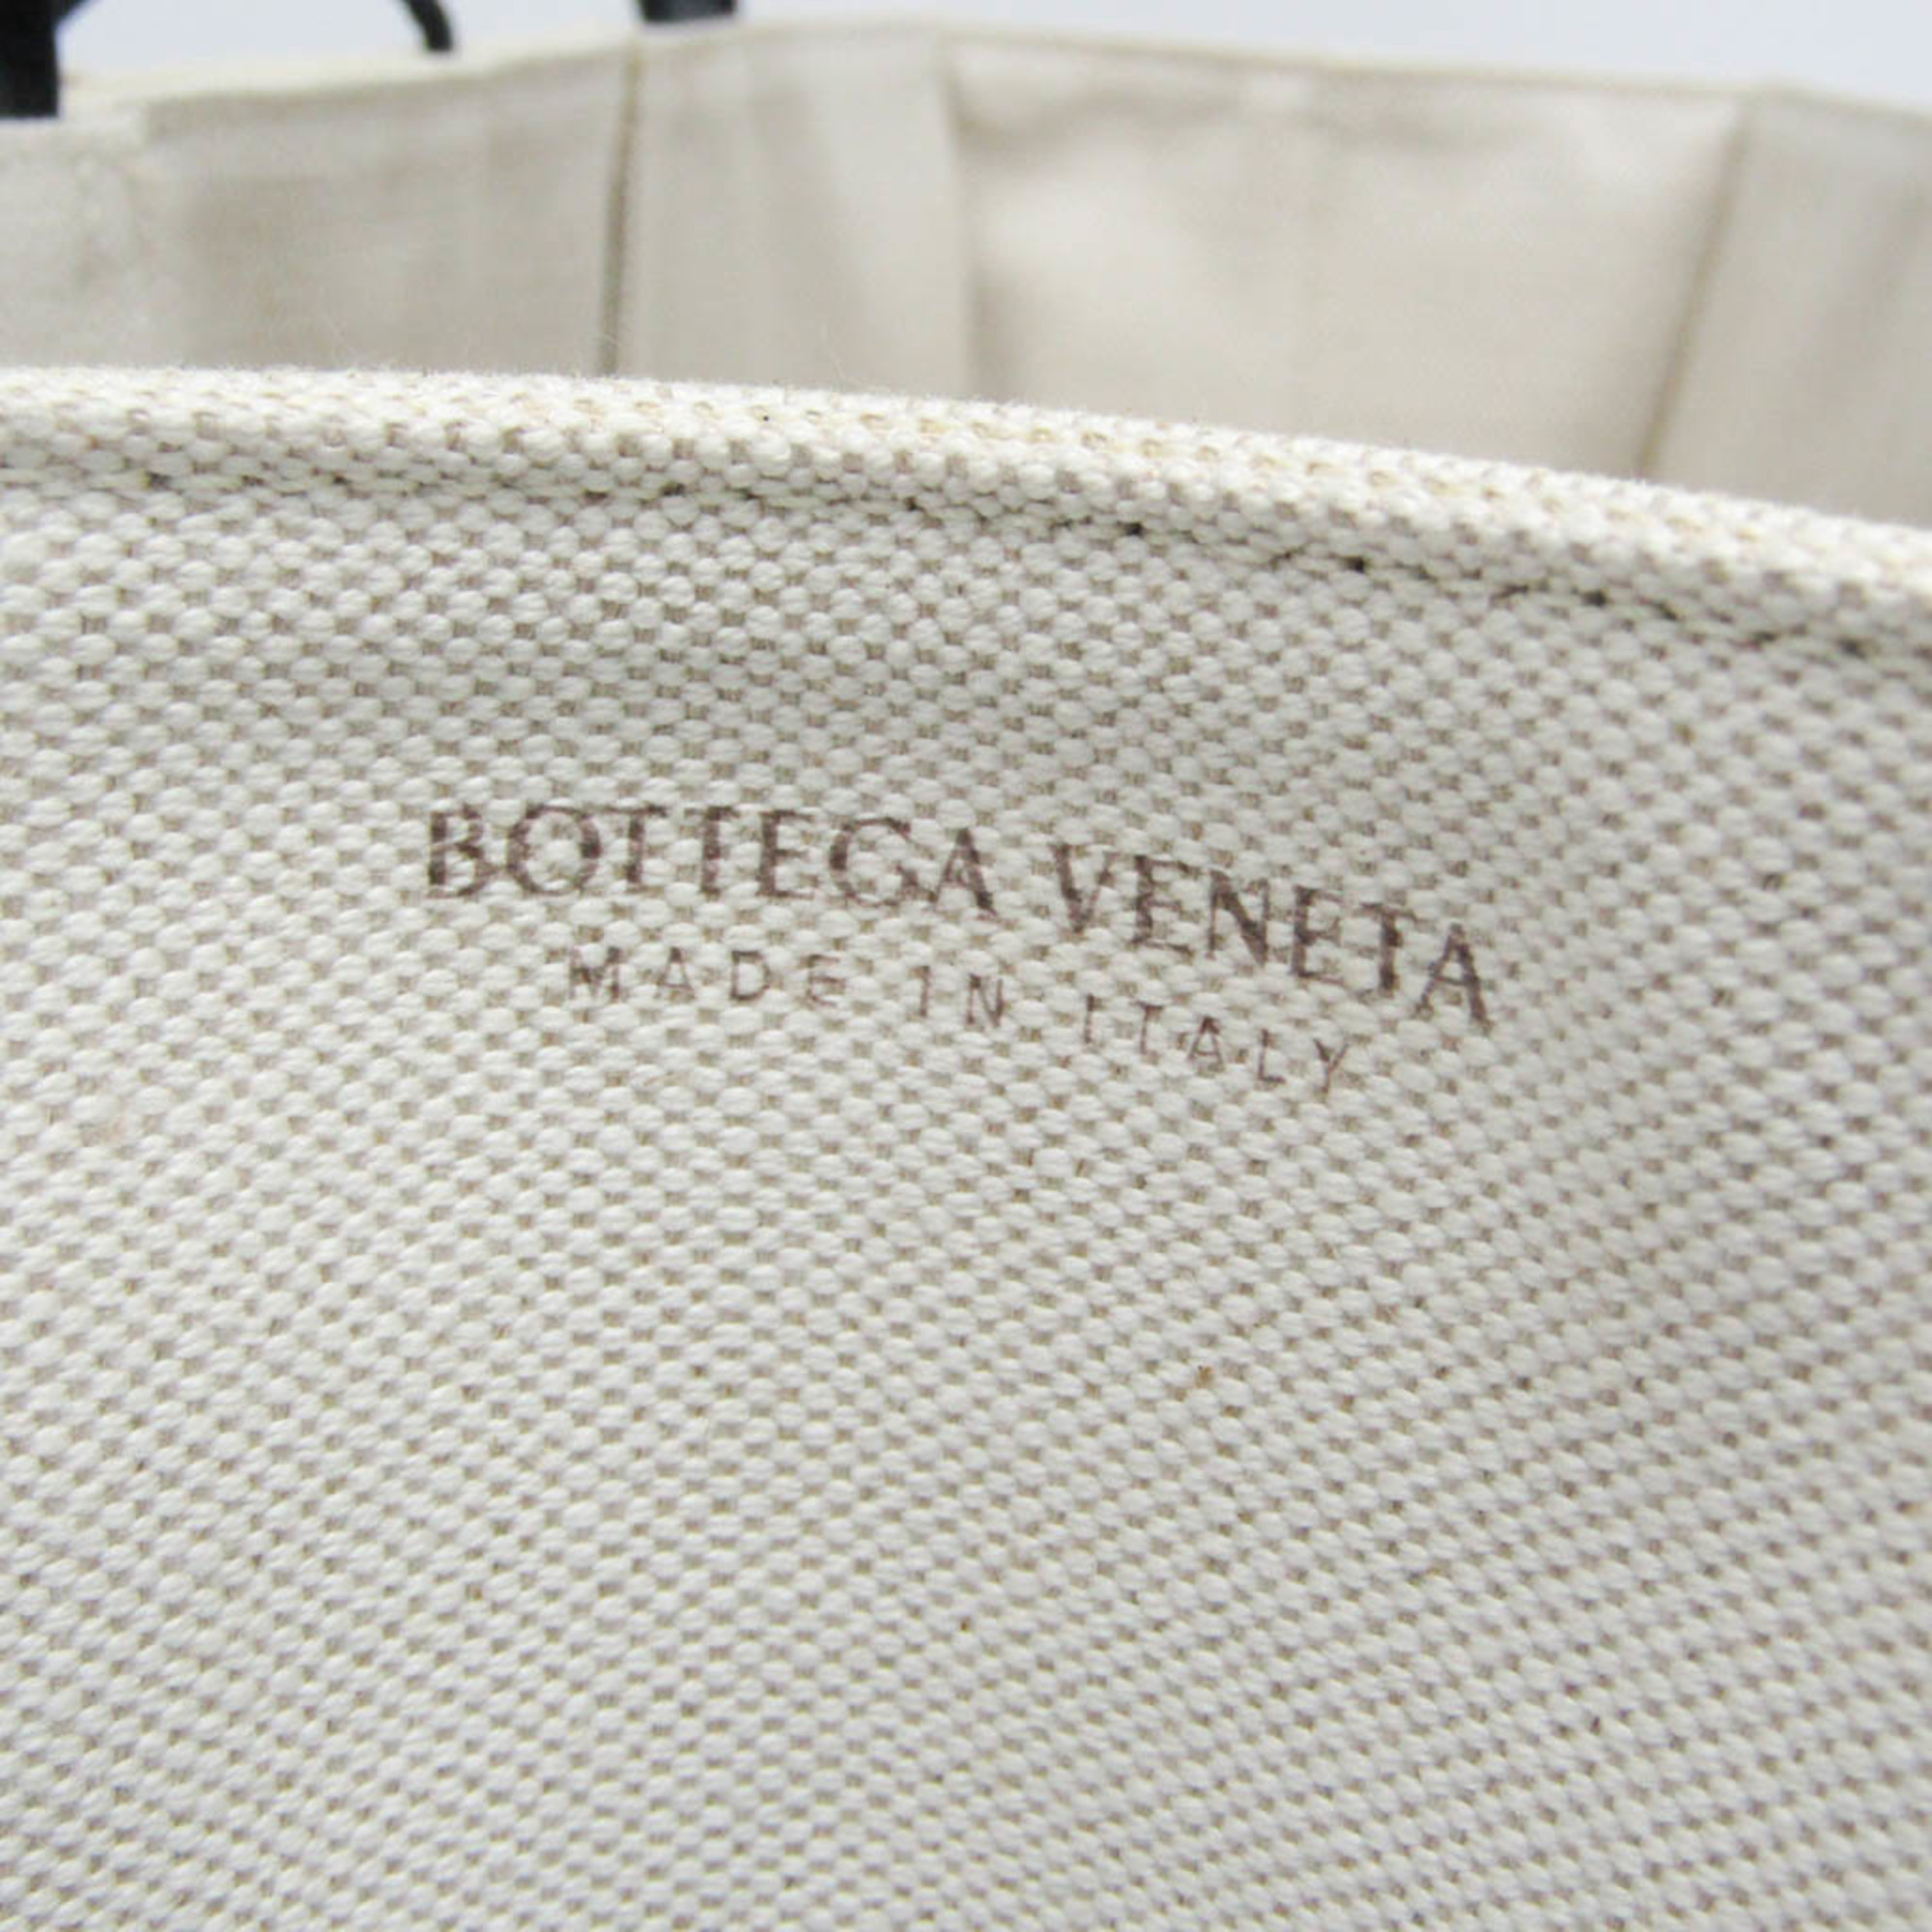 ボッテガ・ヴェネタ(Bottega Veneta) アルコ ミディアム 614486 レディース キャンバス,レザー トートバッグ ブラック,オフホワイト